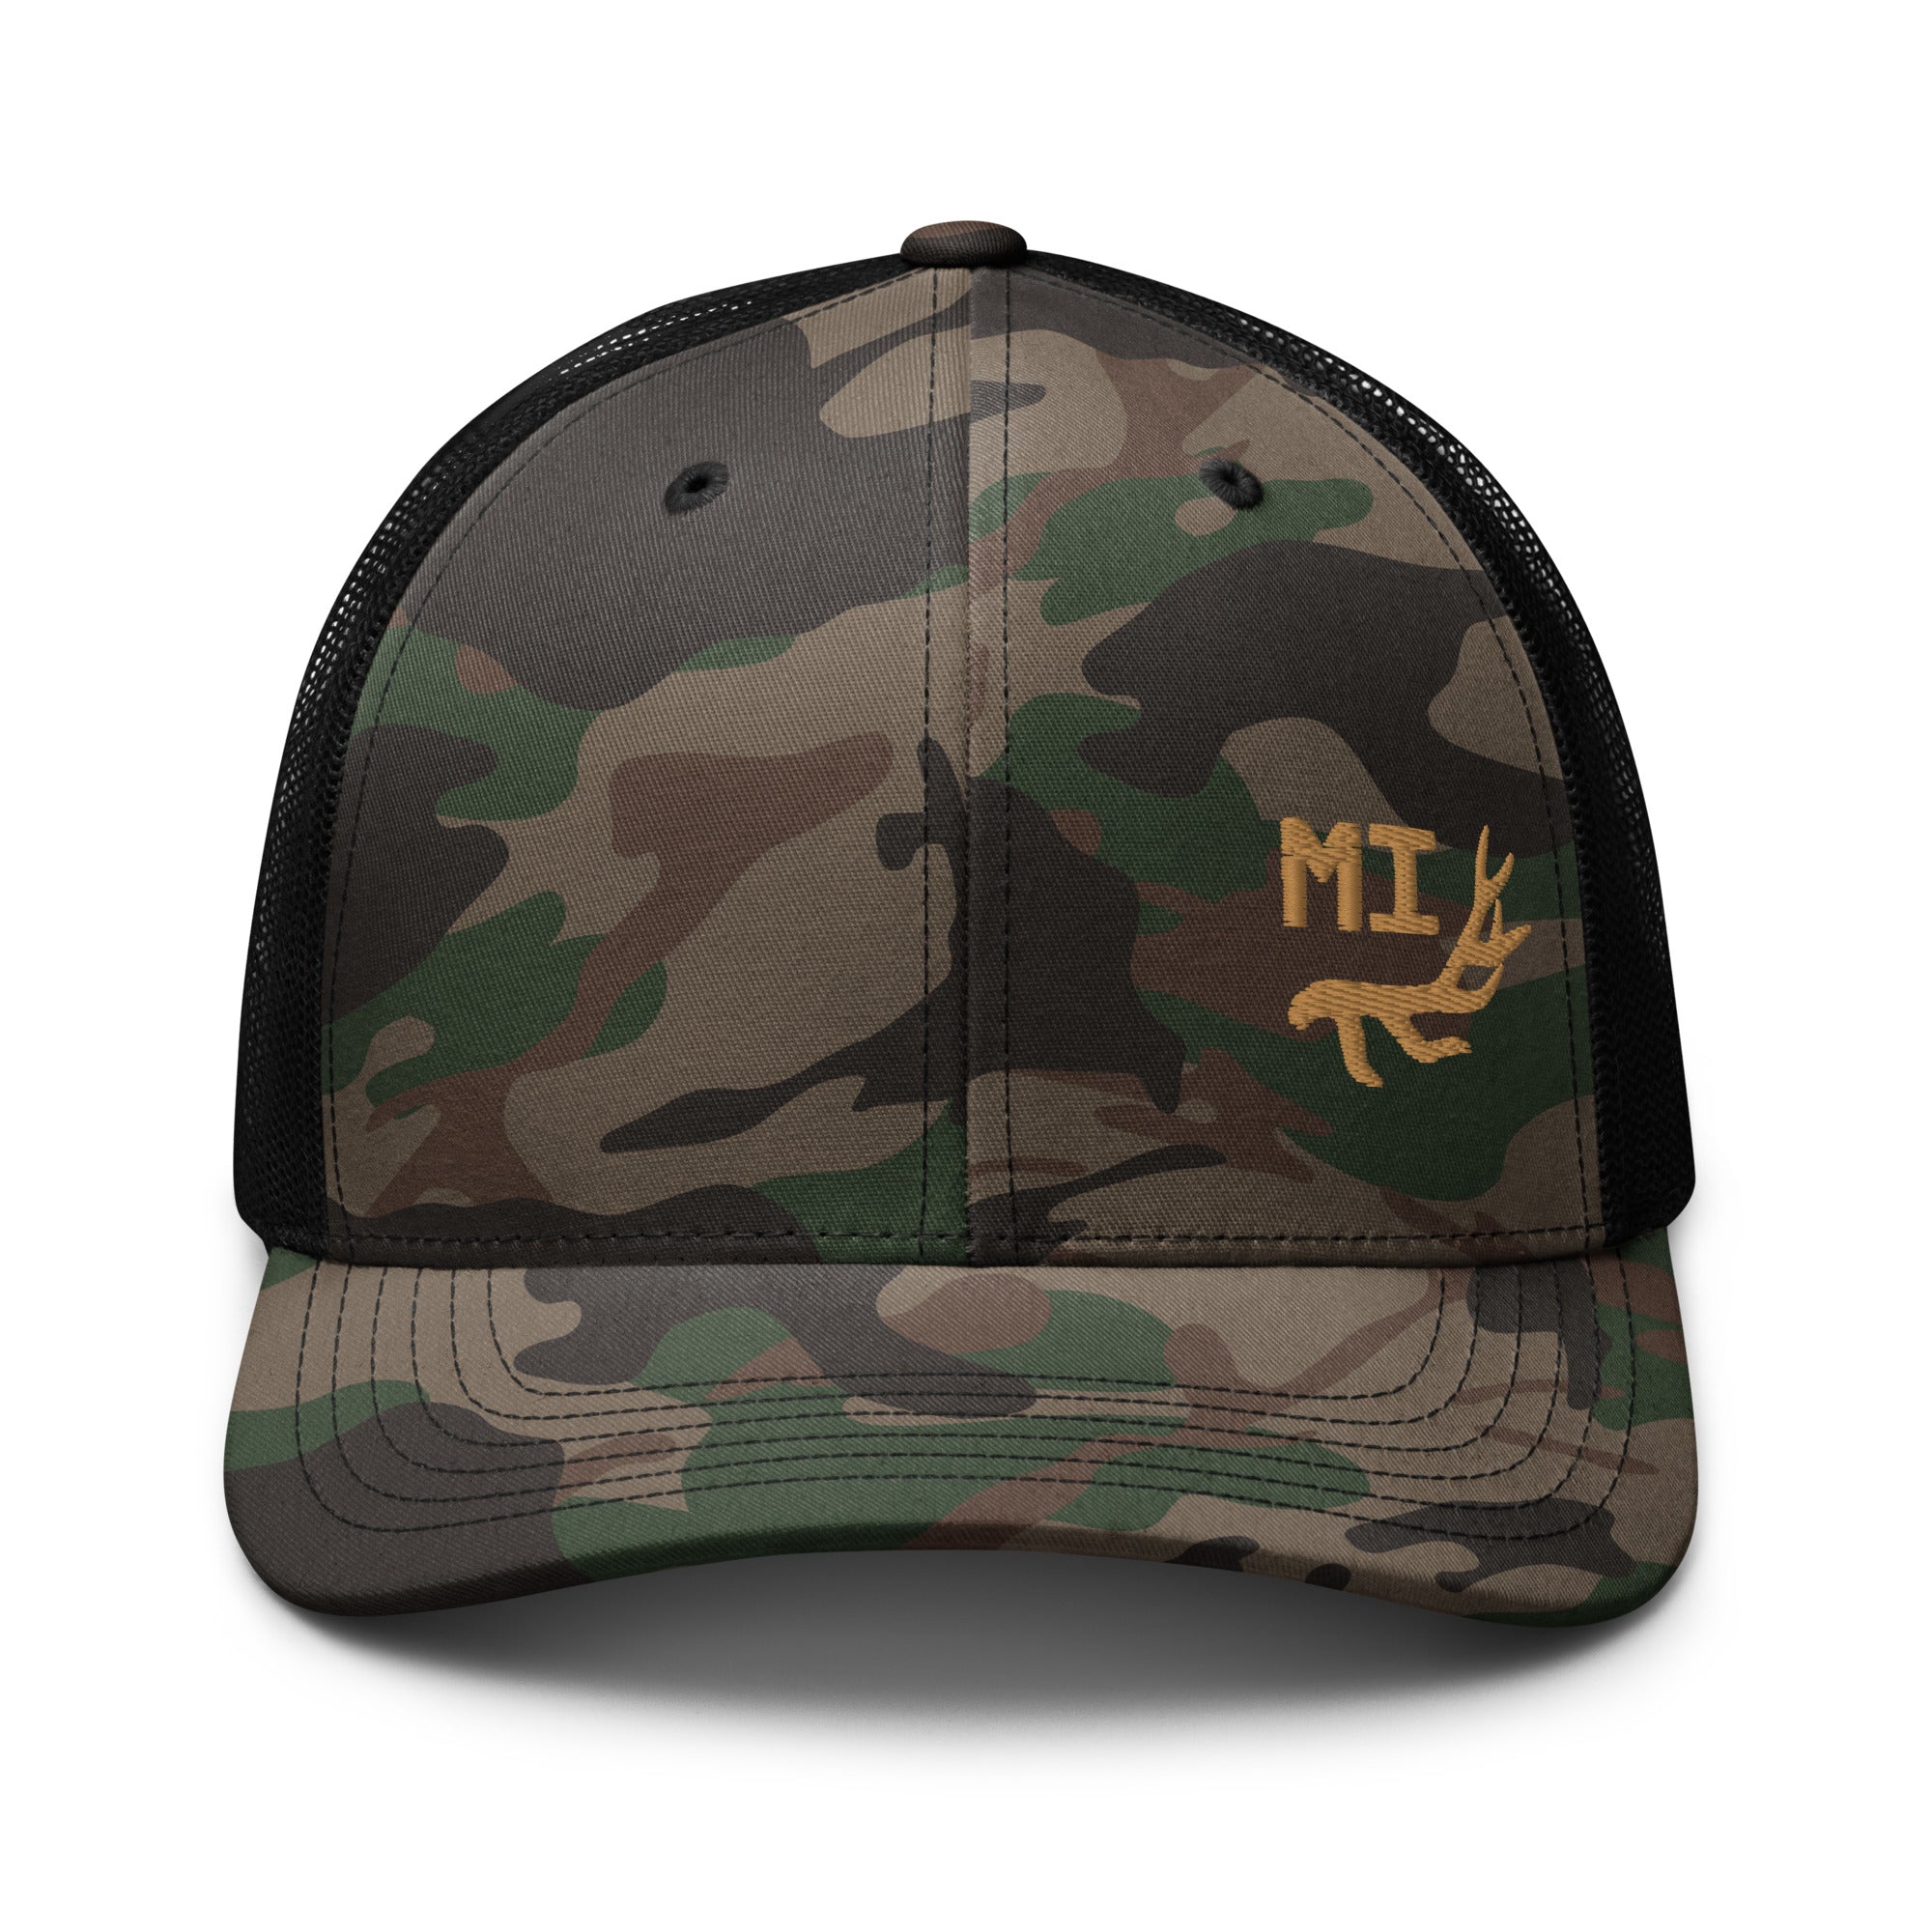 camouflage-trucker-hat-camo-black-front-655e617b89e54.jpg